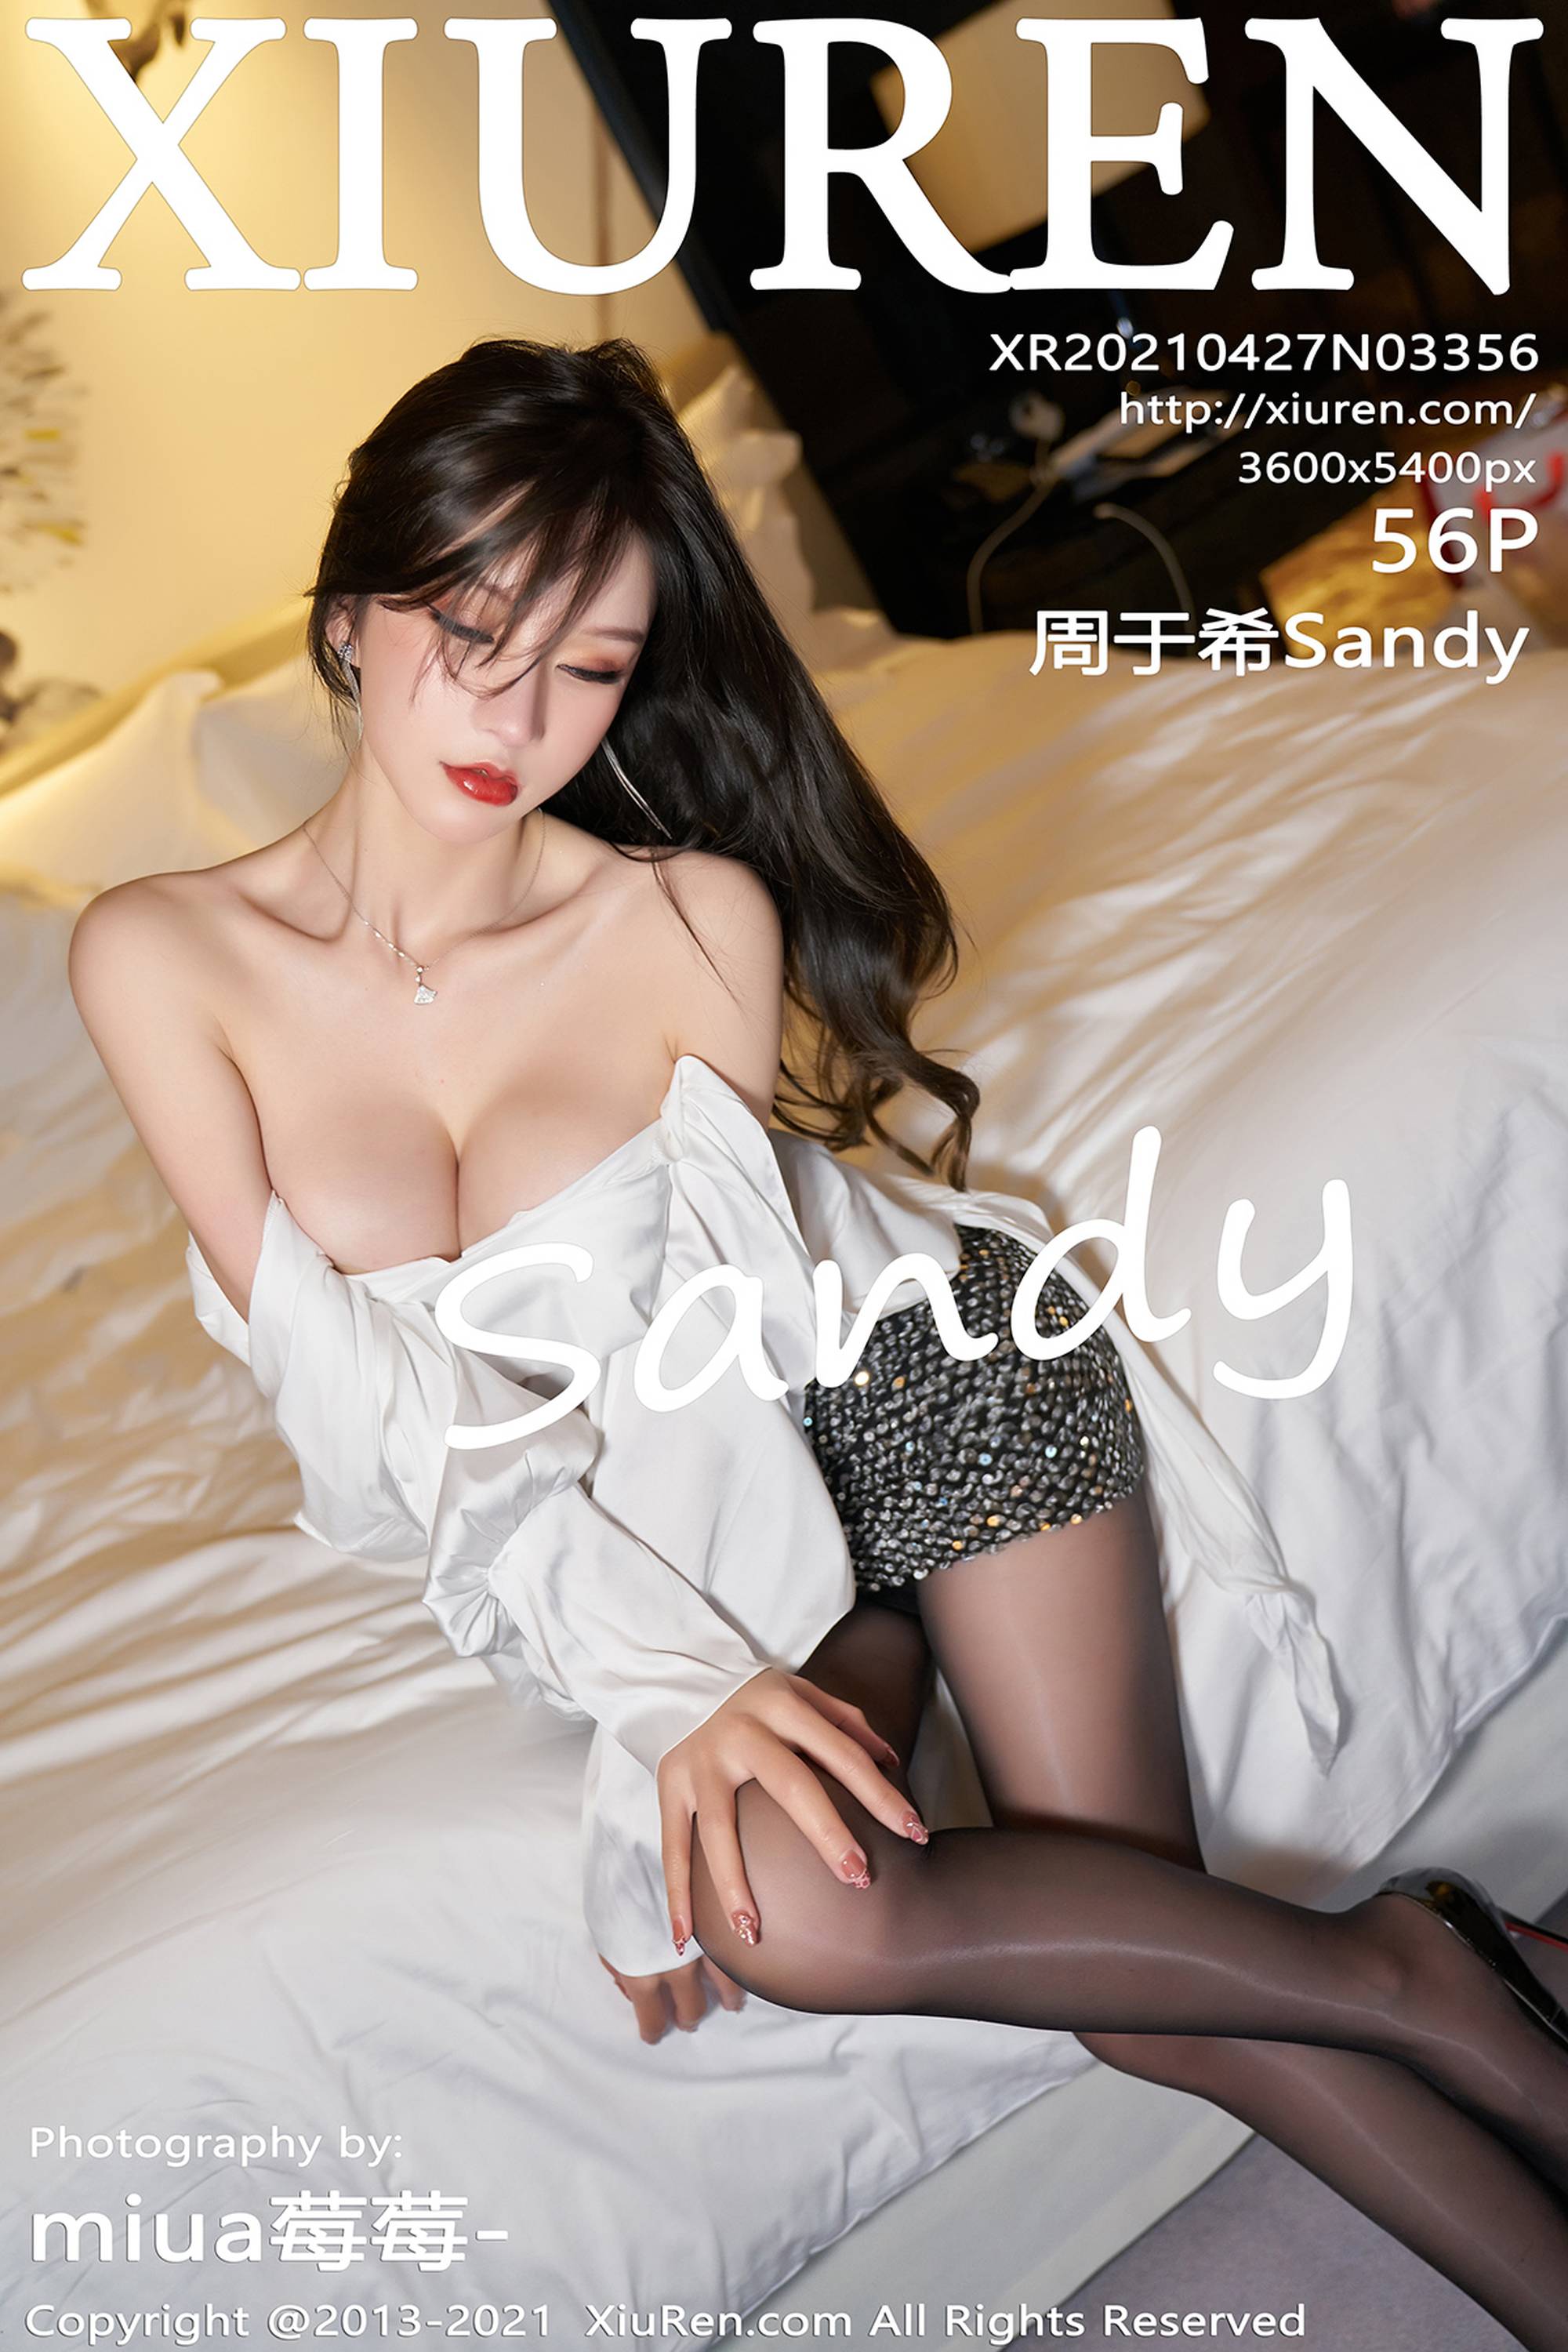 【Xiuren秀人系列】2021.04.27 No.3356 周于希Sandy 完整版無水印寫真【57P】 - 貼圖 - 絲襪美腿 -